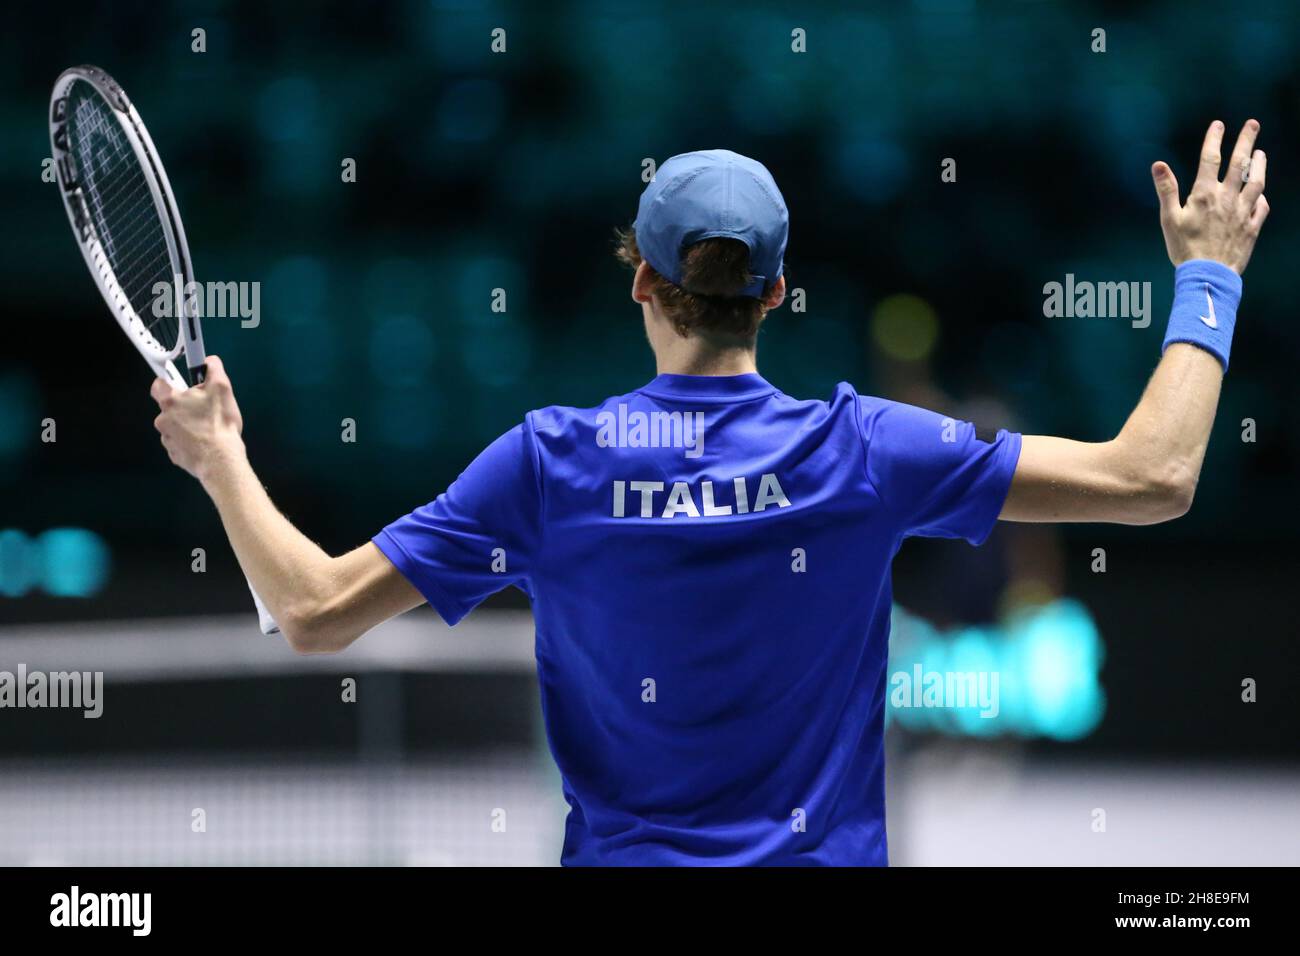 Jannik Sinnerin aus Italien feiert im Spiel gegen Marin Cilic aus Kroatien während des Davis Cup Viertelfinalmatches zwischen Italien und Kroatien am 29. November 2021 im Pala Alpitour in Turin, Italien . Stockfoto